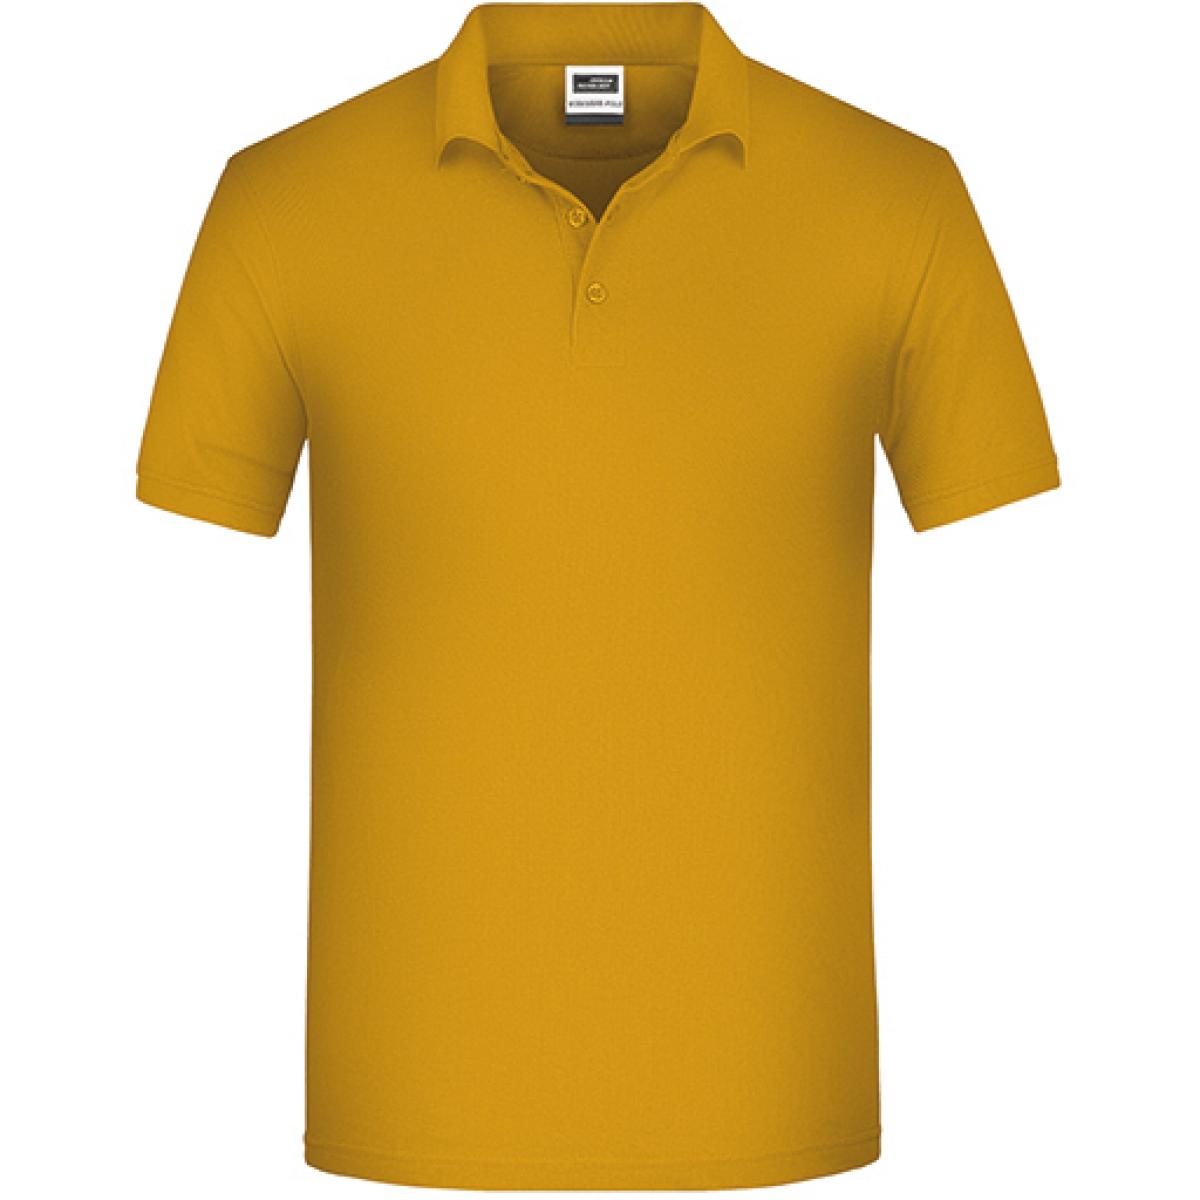 Hersteller: James+Nicholson Herstellernummer: JN874 Artikelbezeichnung: Herren Bio Workwear Polo, Bio-Baumwolle und Polyester Farbe: Gold Yellow